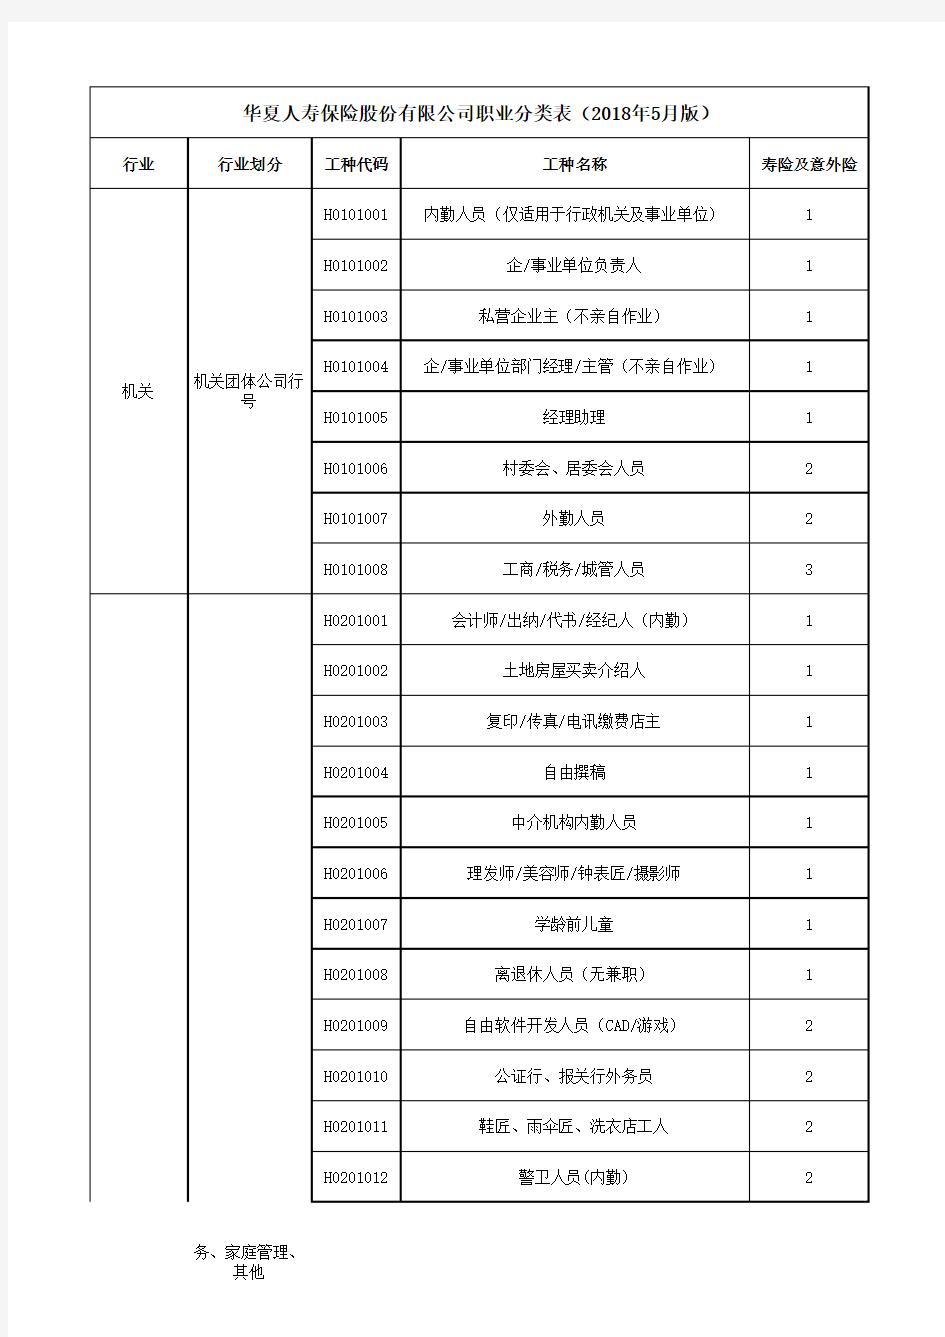 职业分类表2018年5月版